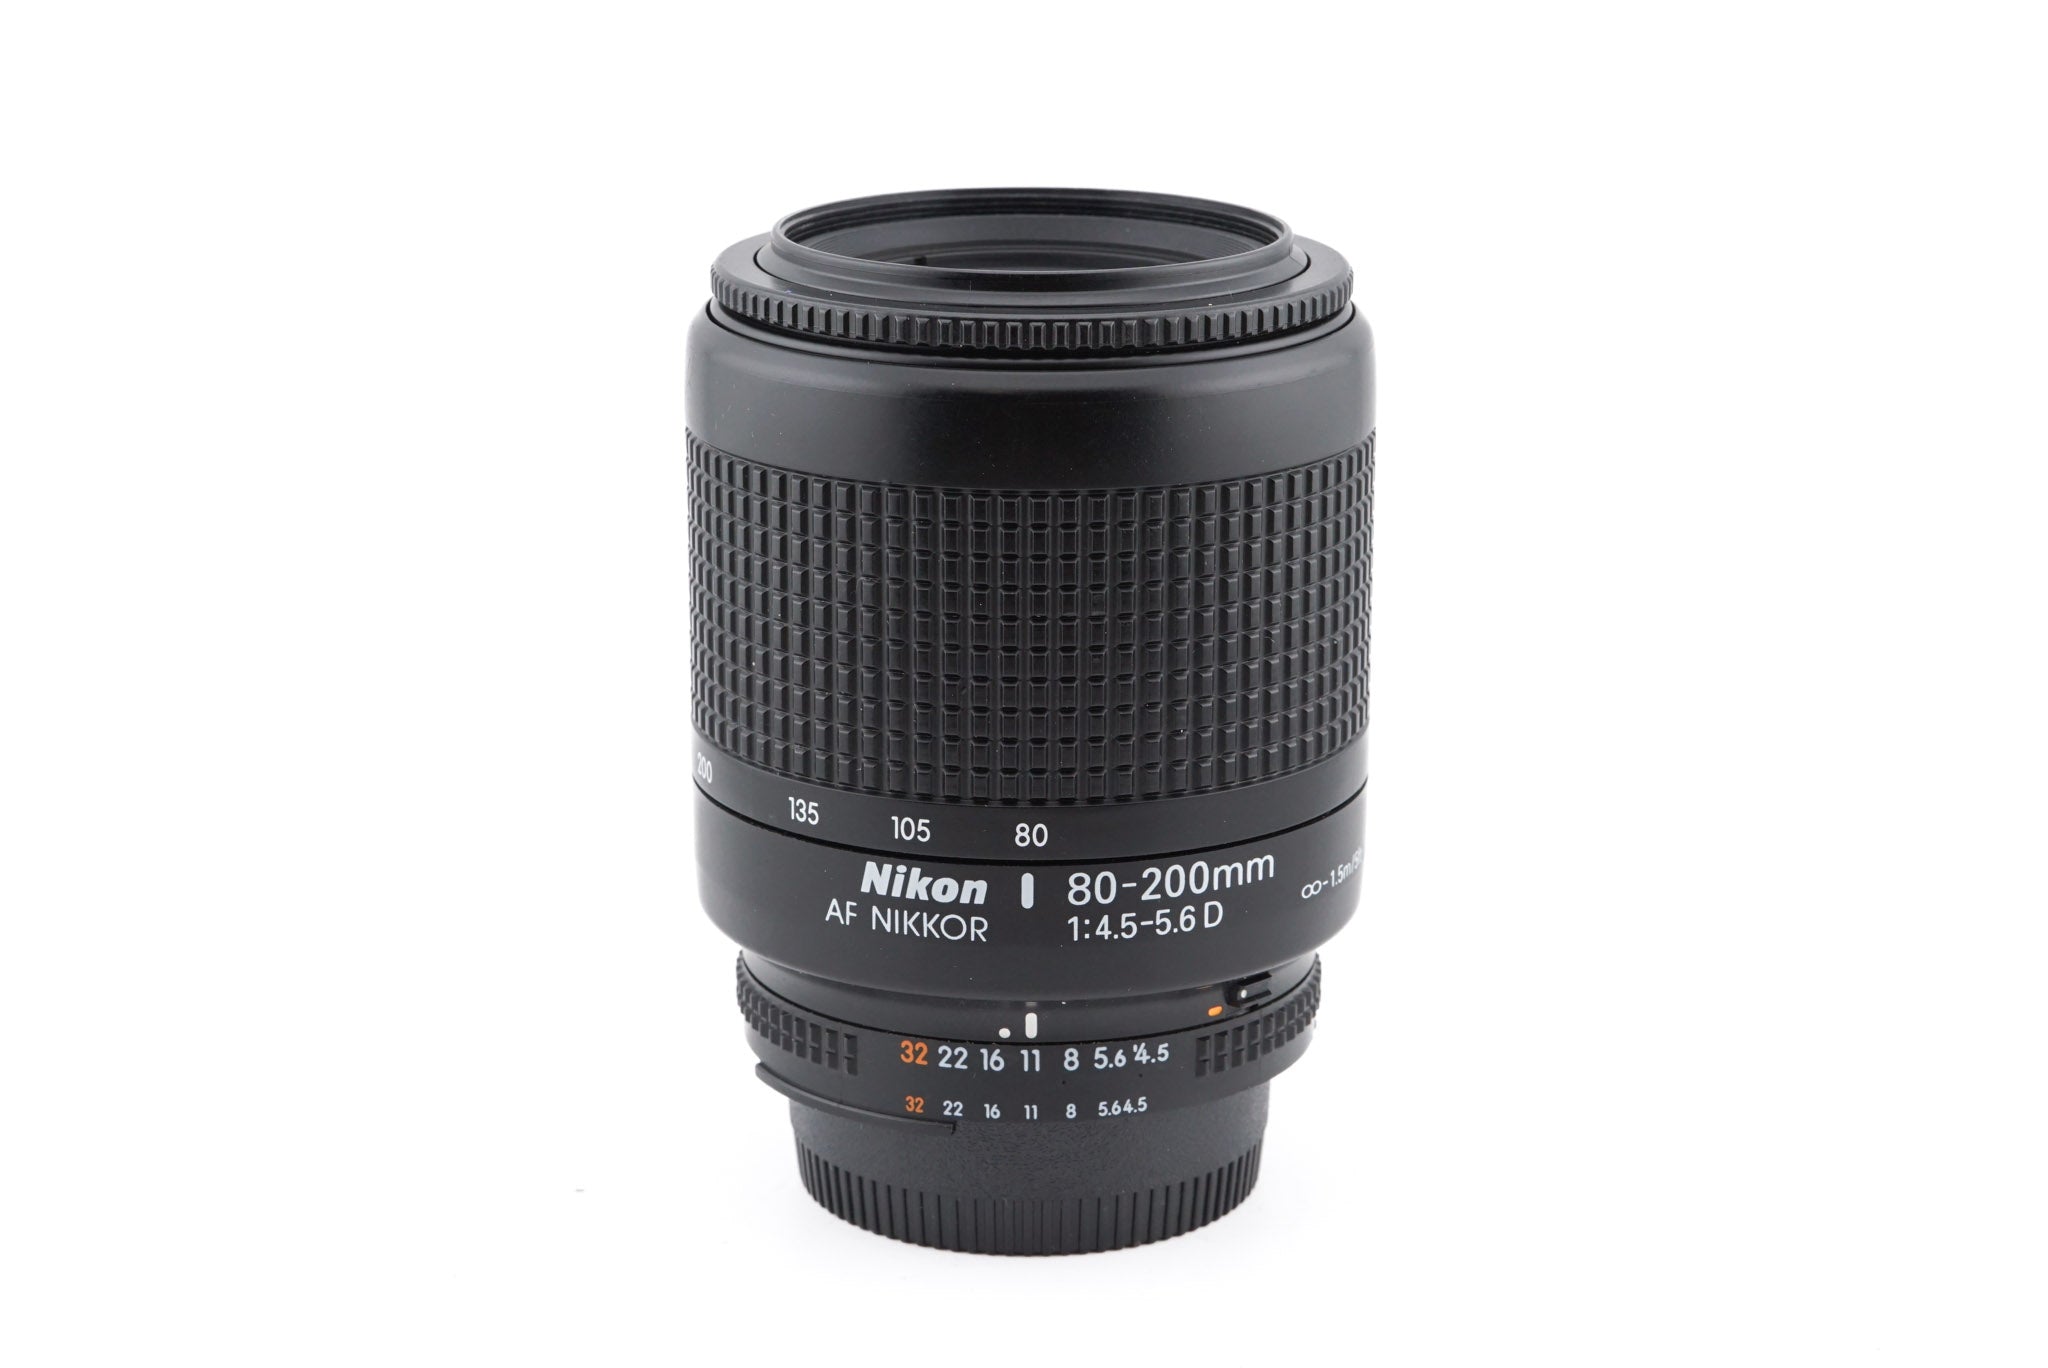 Nikon 80-200mm f4.5-5.6 D AF Nikkor - Lens